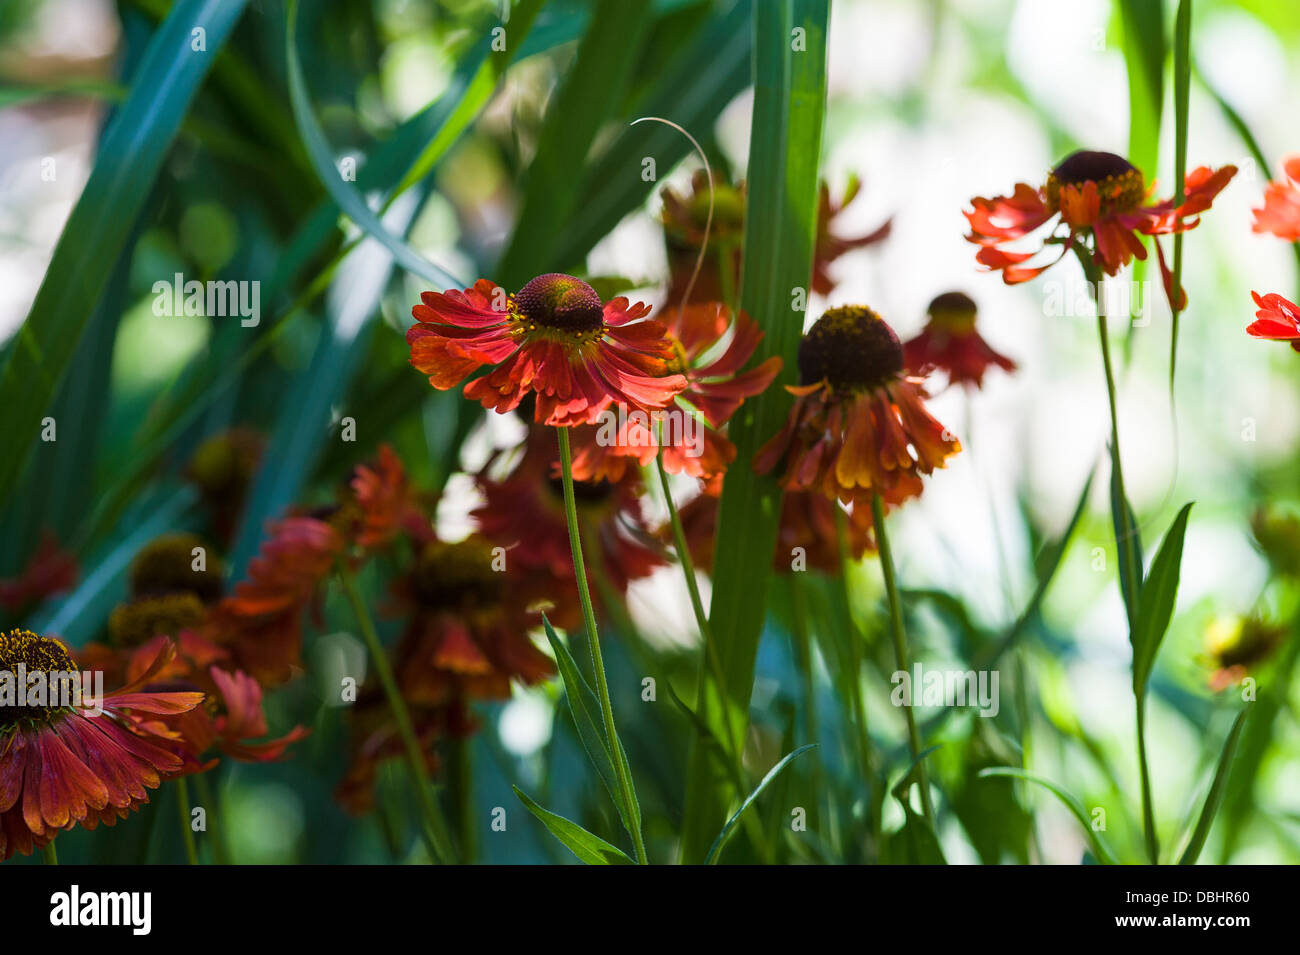 helenium moerheim beauty, helens flower. Stock Photo